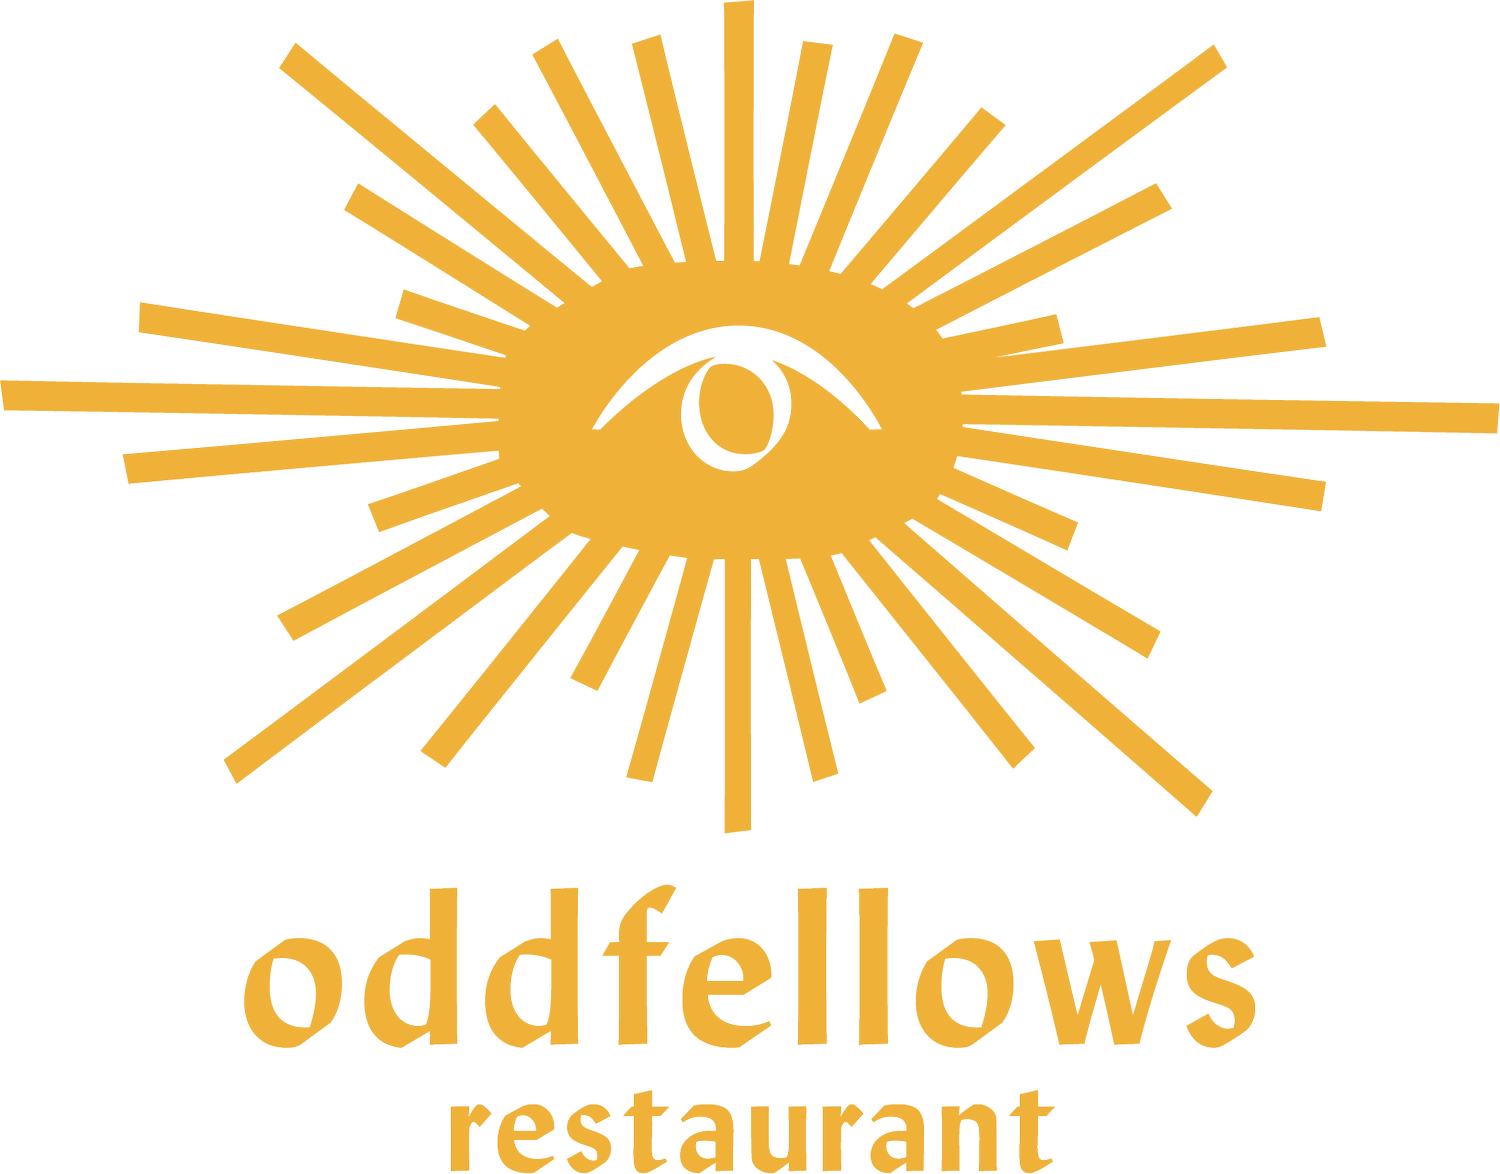 Oddfellows Restaurant